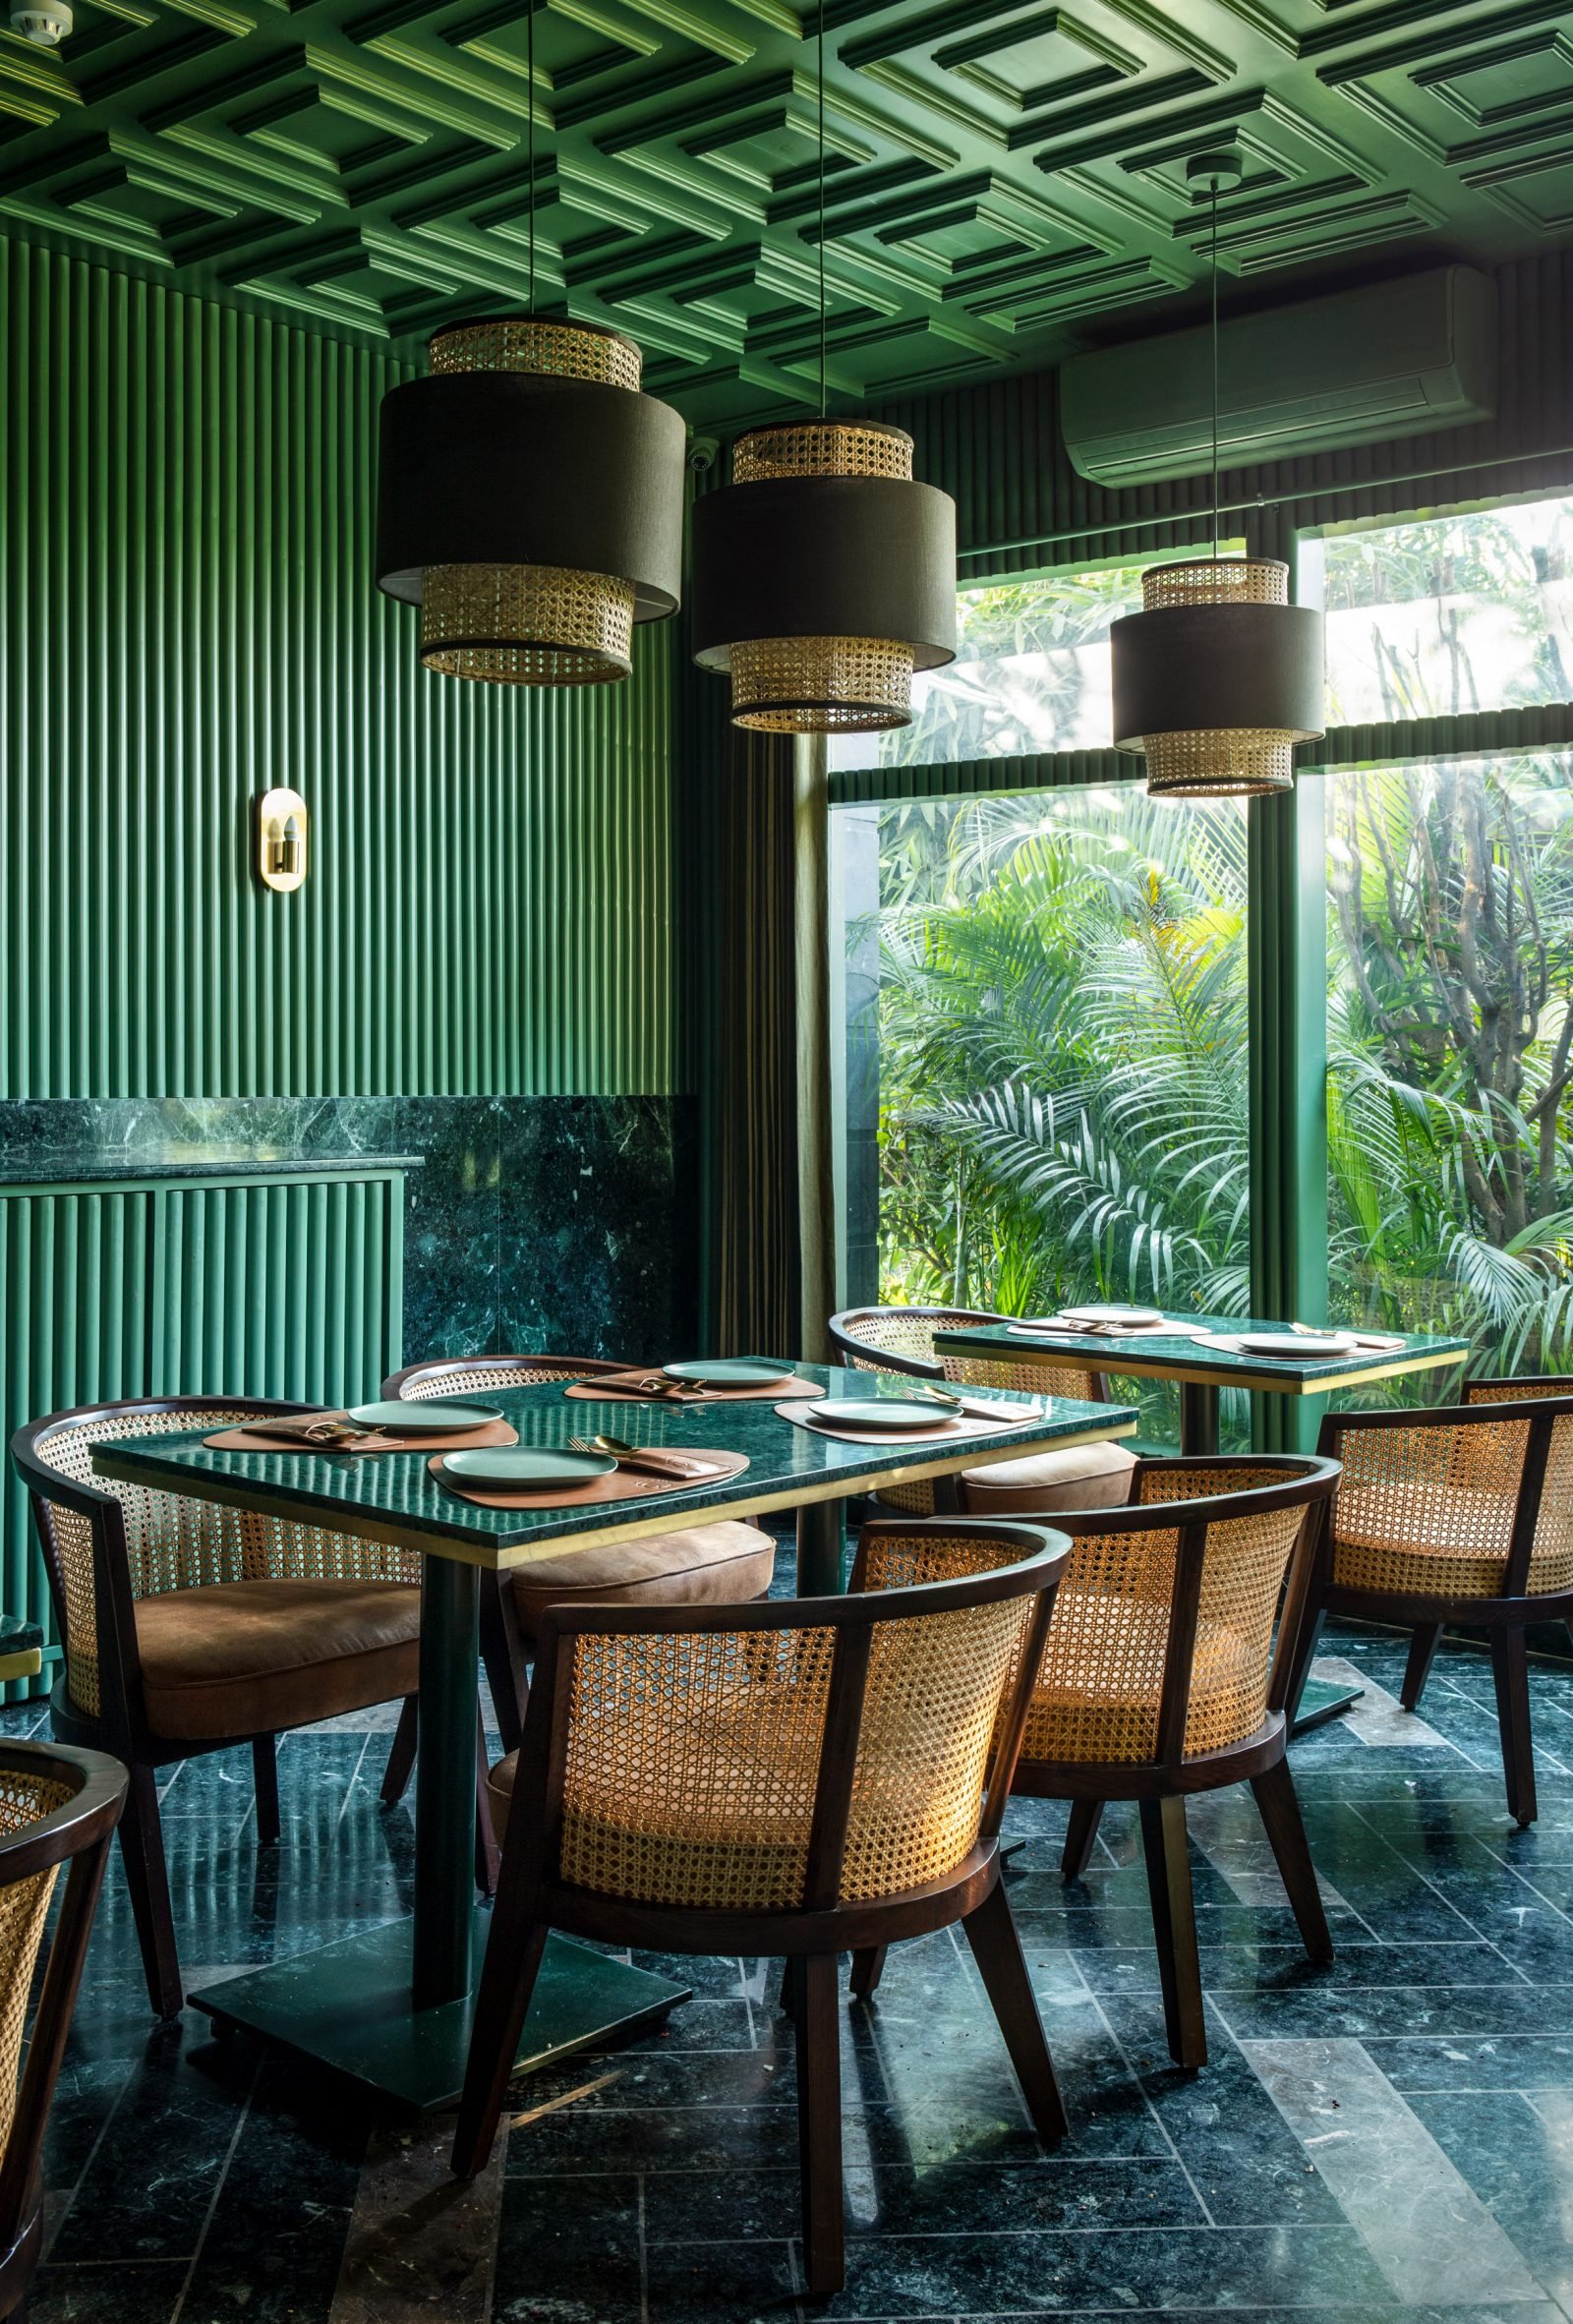 Café com interior verde esmeralda parece uma jóia